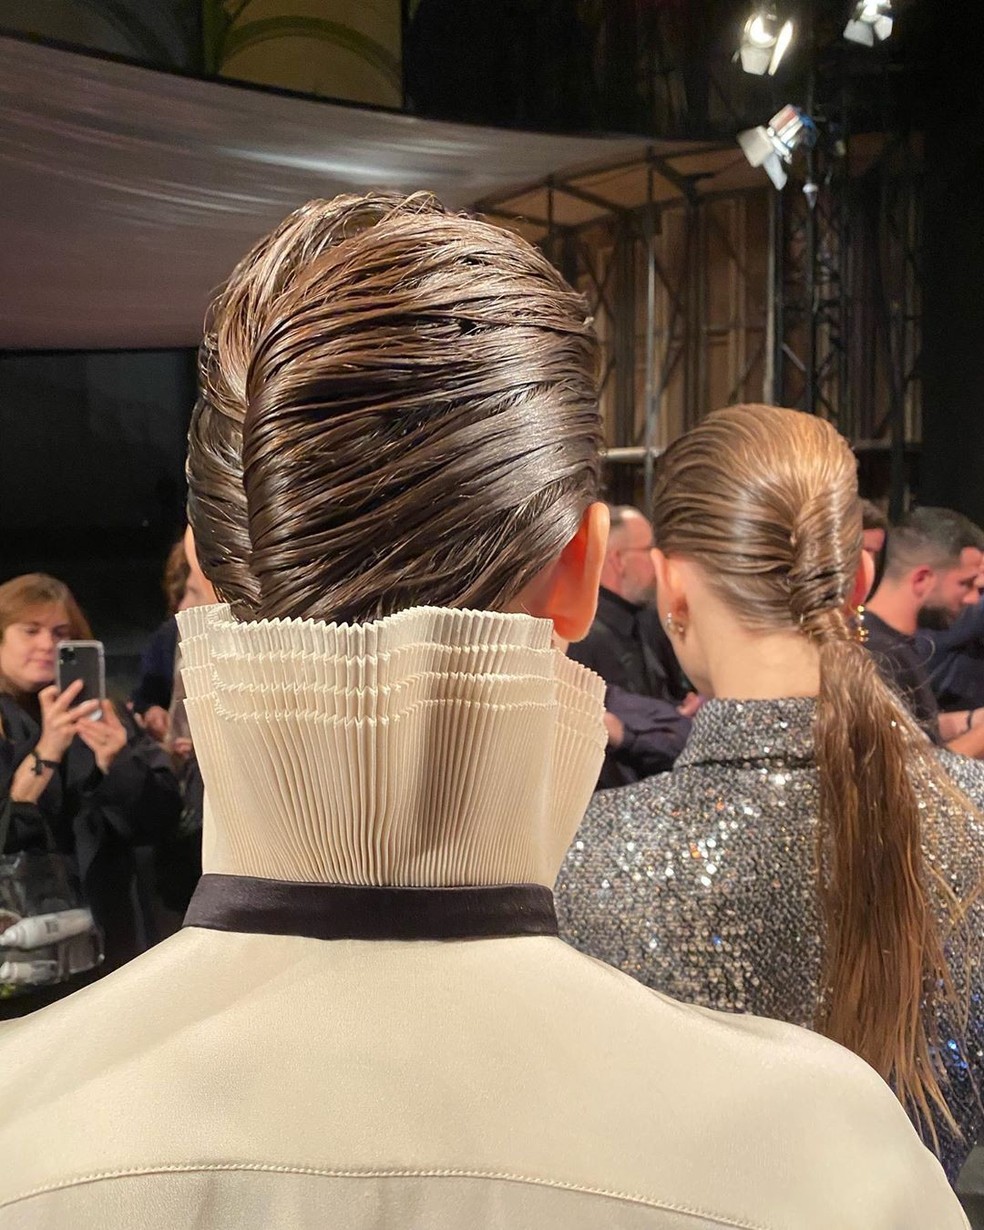 5 dicas de beleza para as festas de fim de ano saídas da passarela de Métiers d'art da Chanel (Foto: Instagram Sam McKnight/ Reprodução) — Foto: Vogue